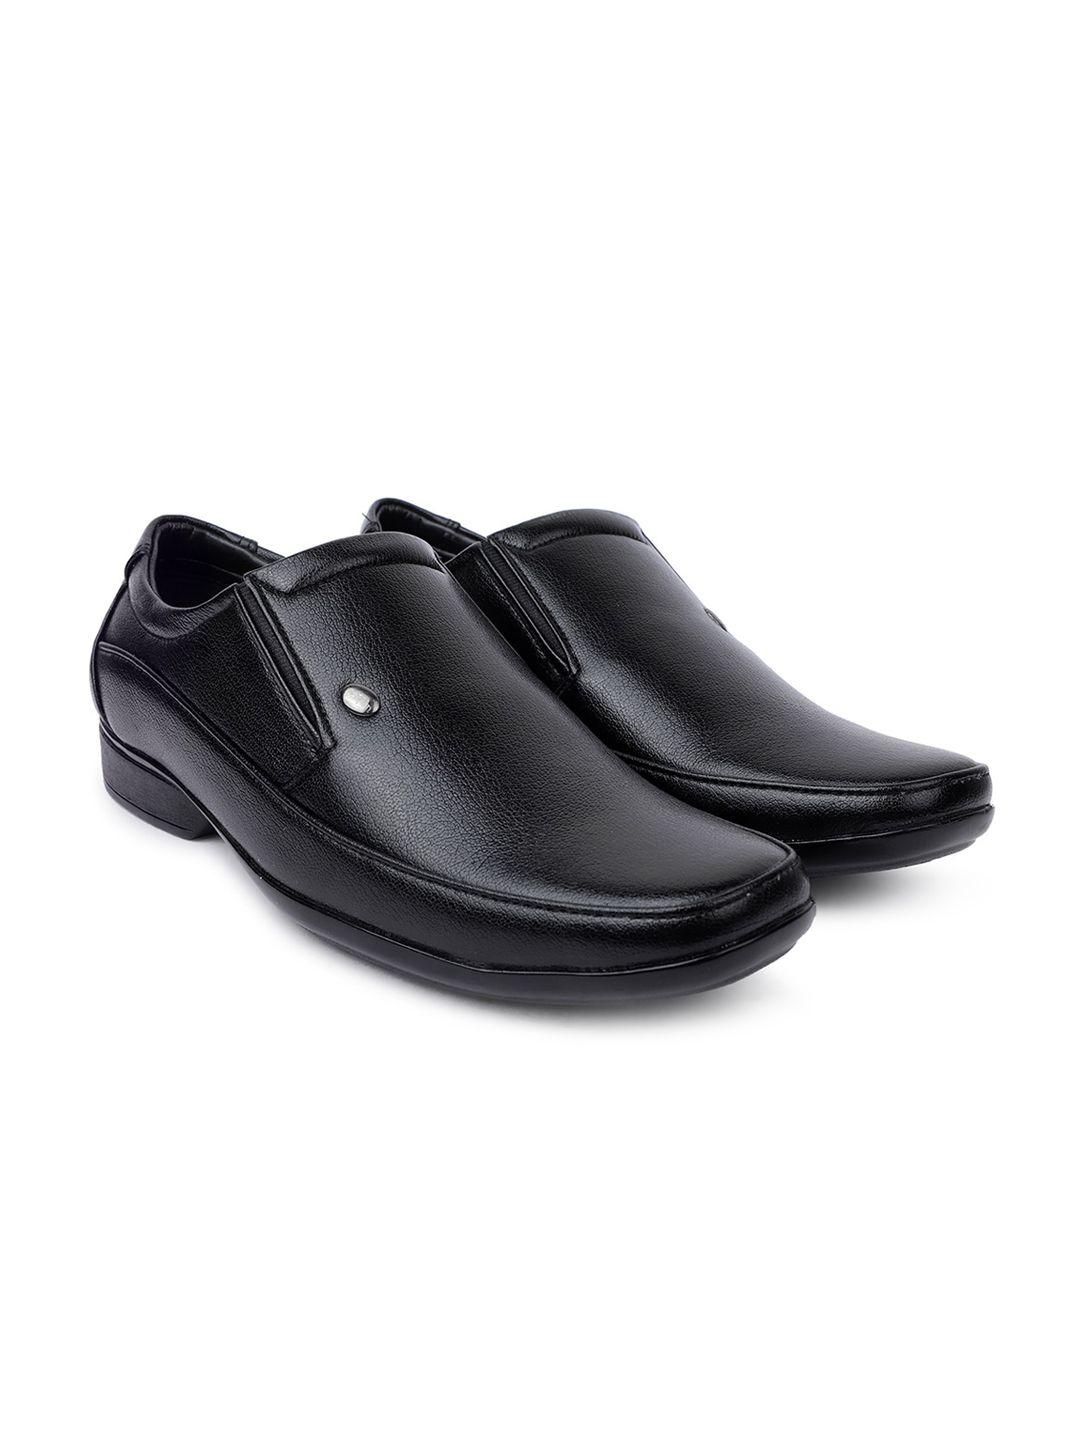 action-men-black-solid-formal-slip-on-shoes